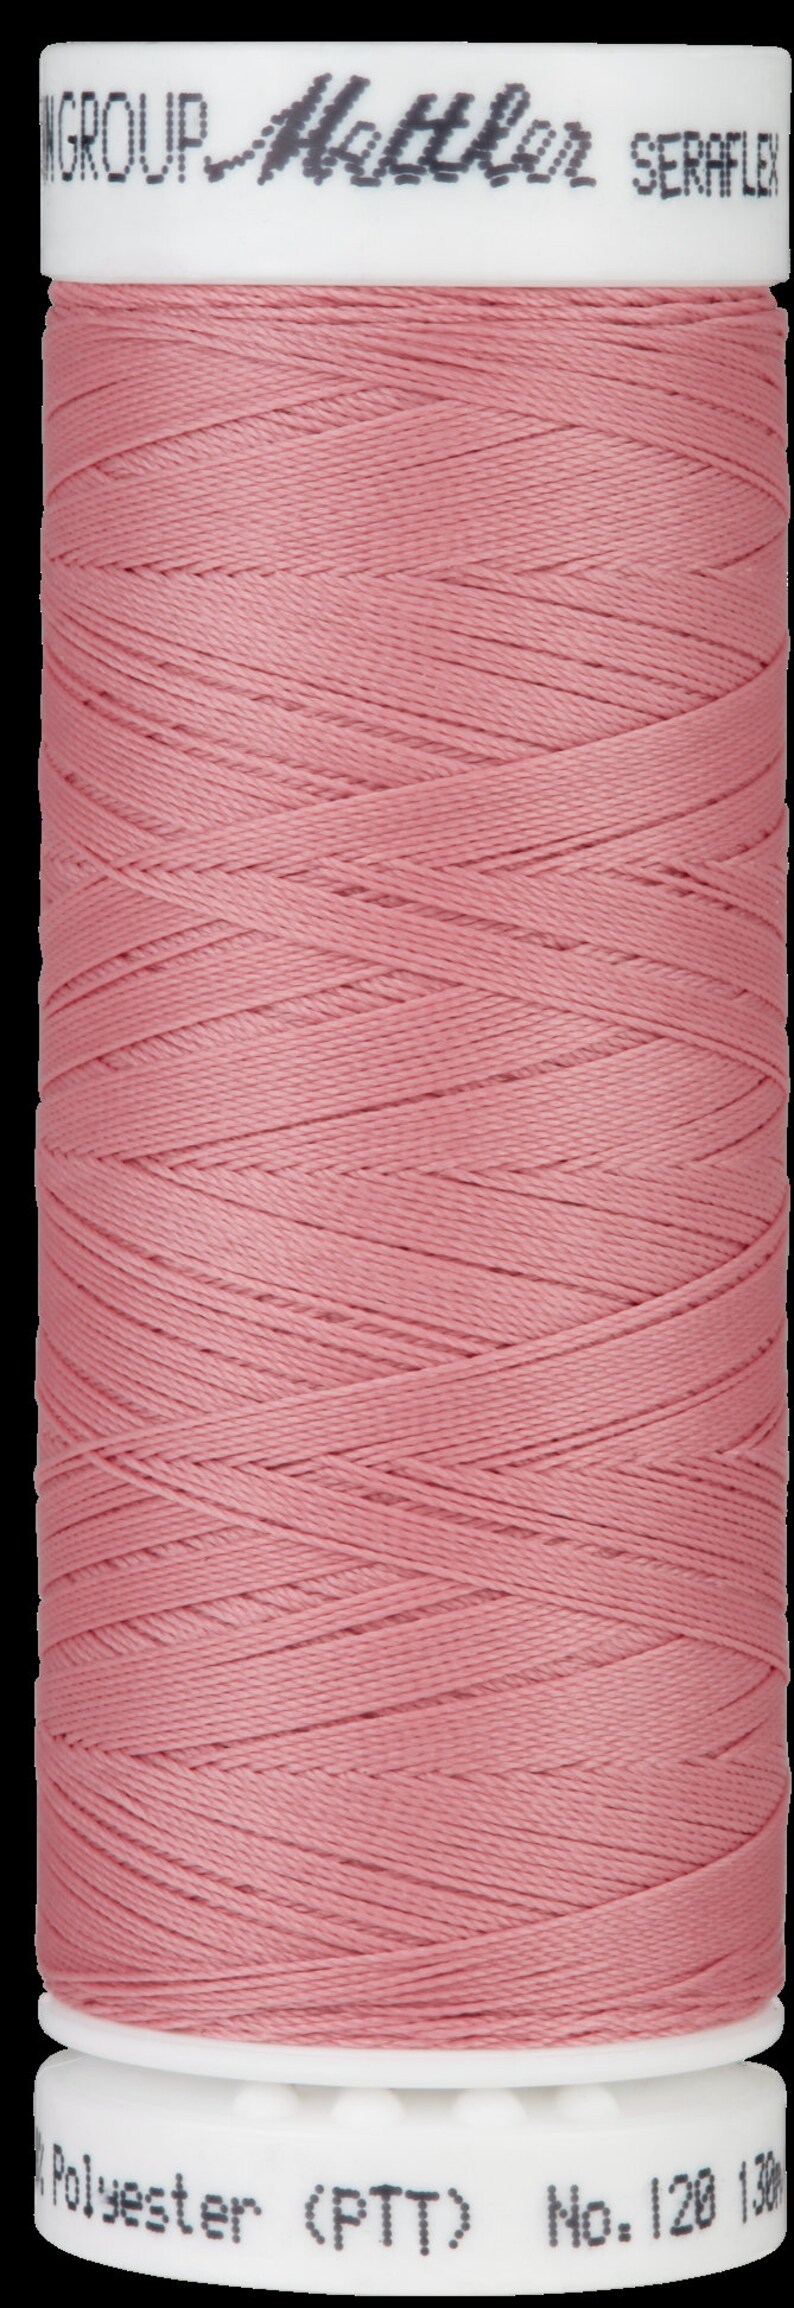 NEUE Farben Seraflex 120 flexibler Faden Nähfaden pink rosa blau Mettler rose quartz